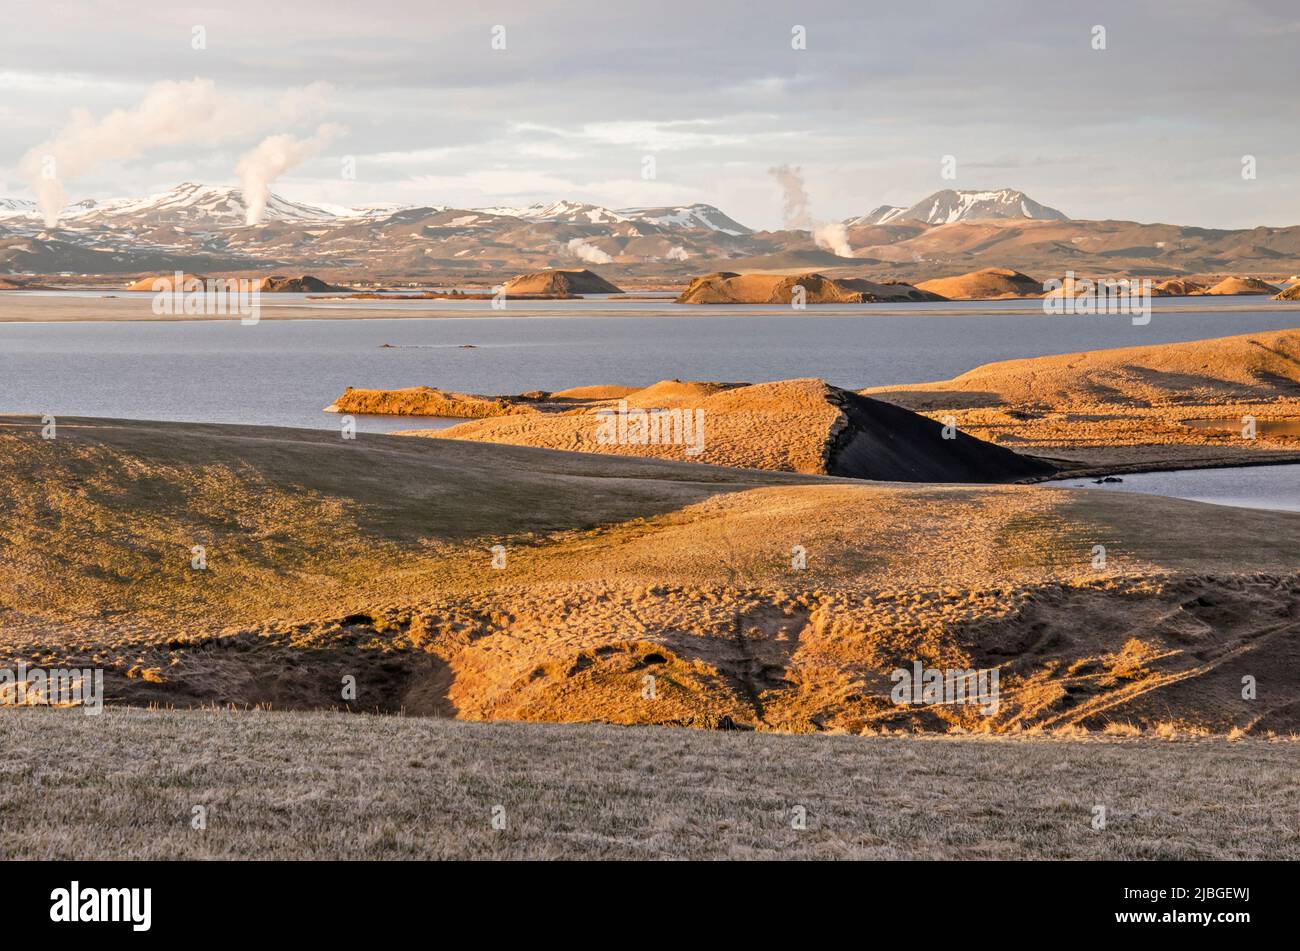 Skútustaðir, Island, 27. April 2022: Letzte Sonnenstrahlen erleuchten die seltsame Landschaft um den See Myvatn, aus der heiße Dampfwolken entweichen Stockfoto